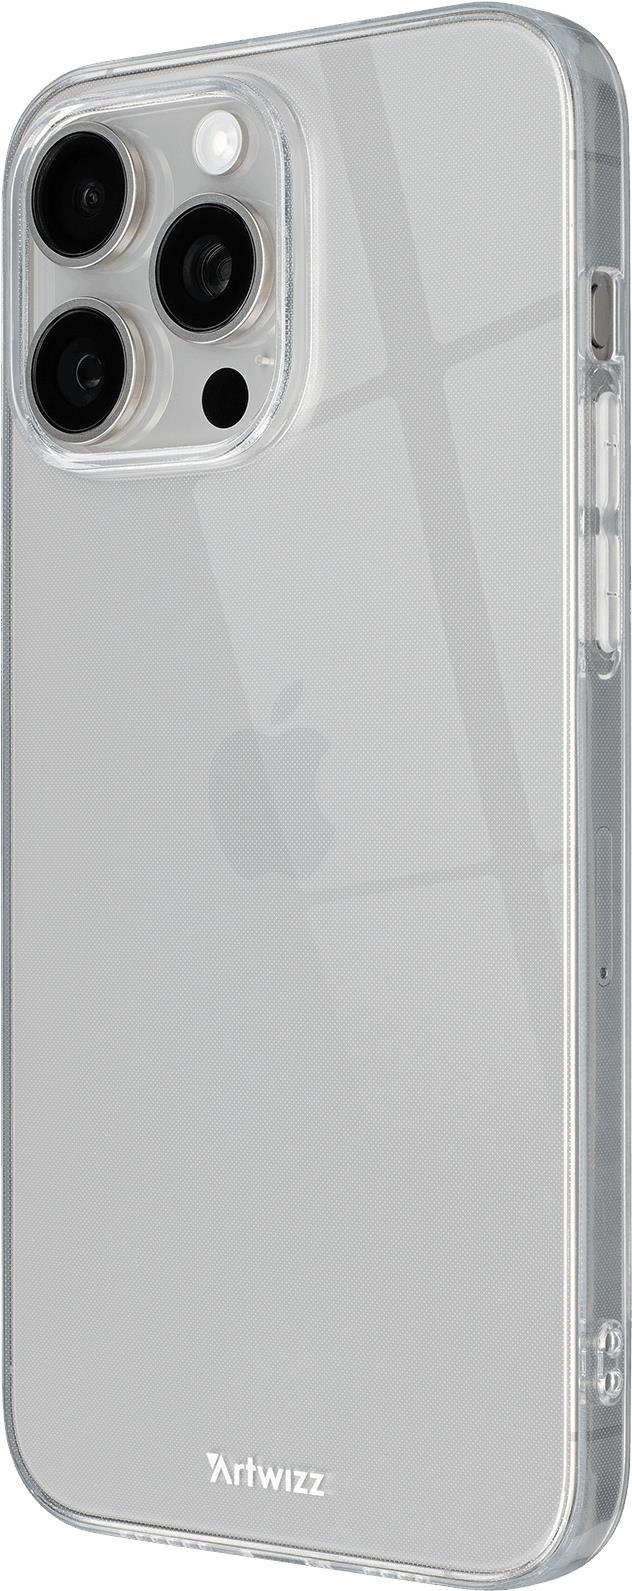 Artwizz NoCase für iPhone 15 Pro Max transparent -  Passend für Apple iPhone 15 Pro Max  Bietet widerstandsfähigen - schlanken Schutz vor Kratzern  Sehr flaches - transparentes Design  Speziell entwickeltes - widerstandsfähiges Material Perfekter Schutz - ohne das Design des iPhone zu verstecken (7924-3779)